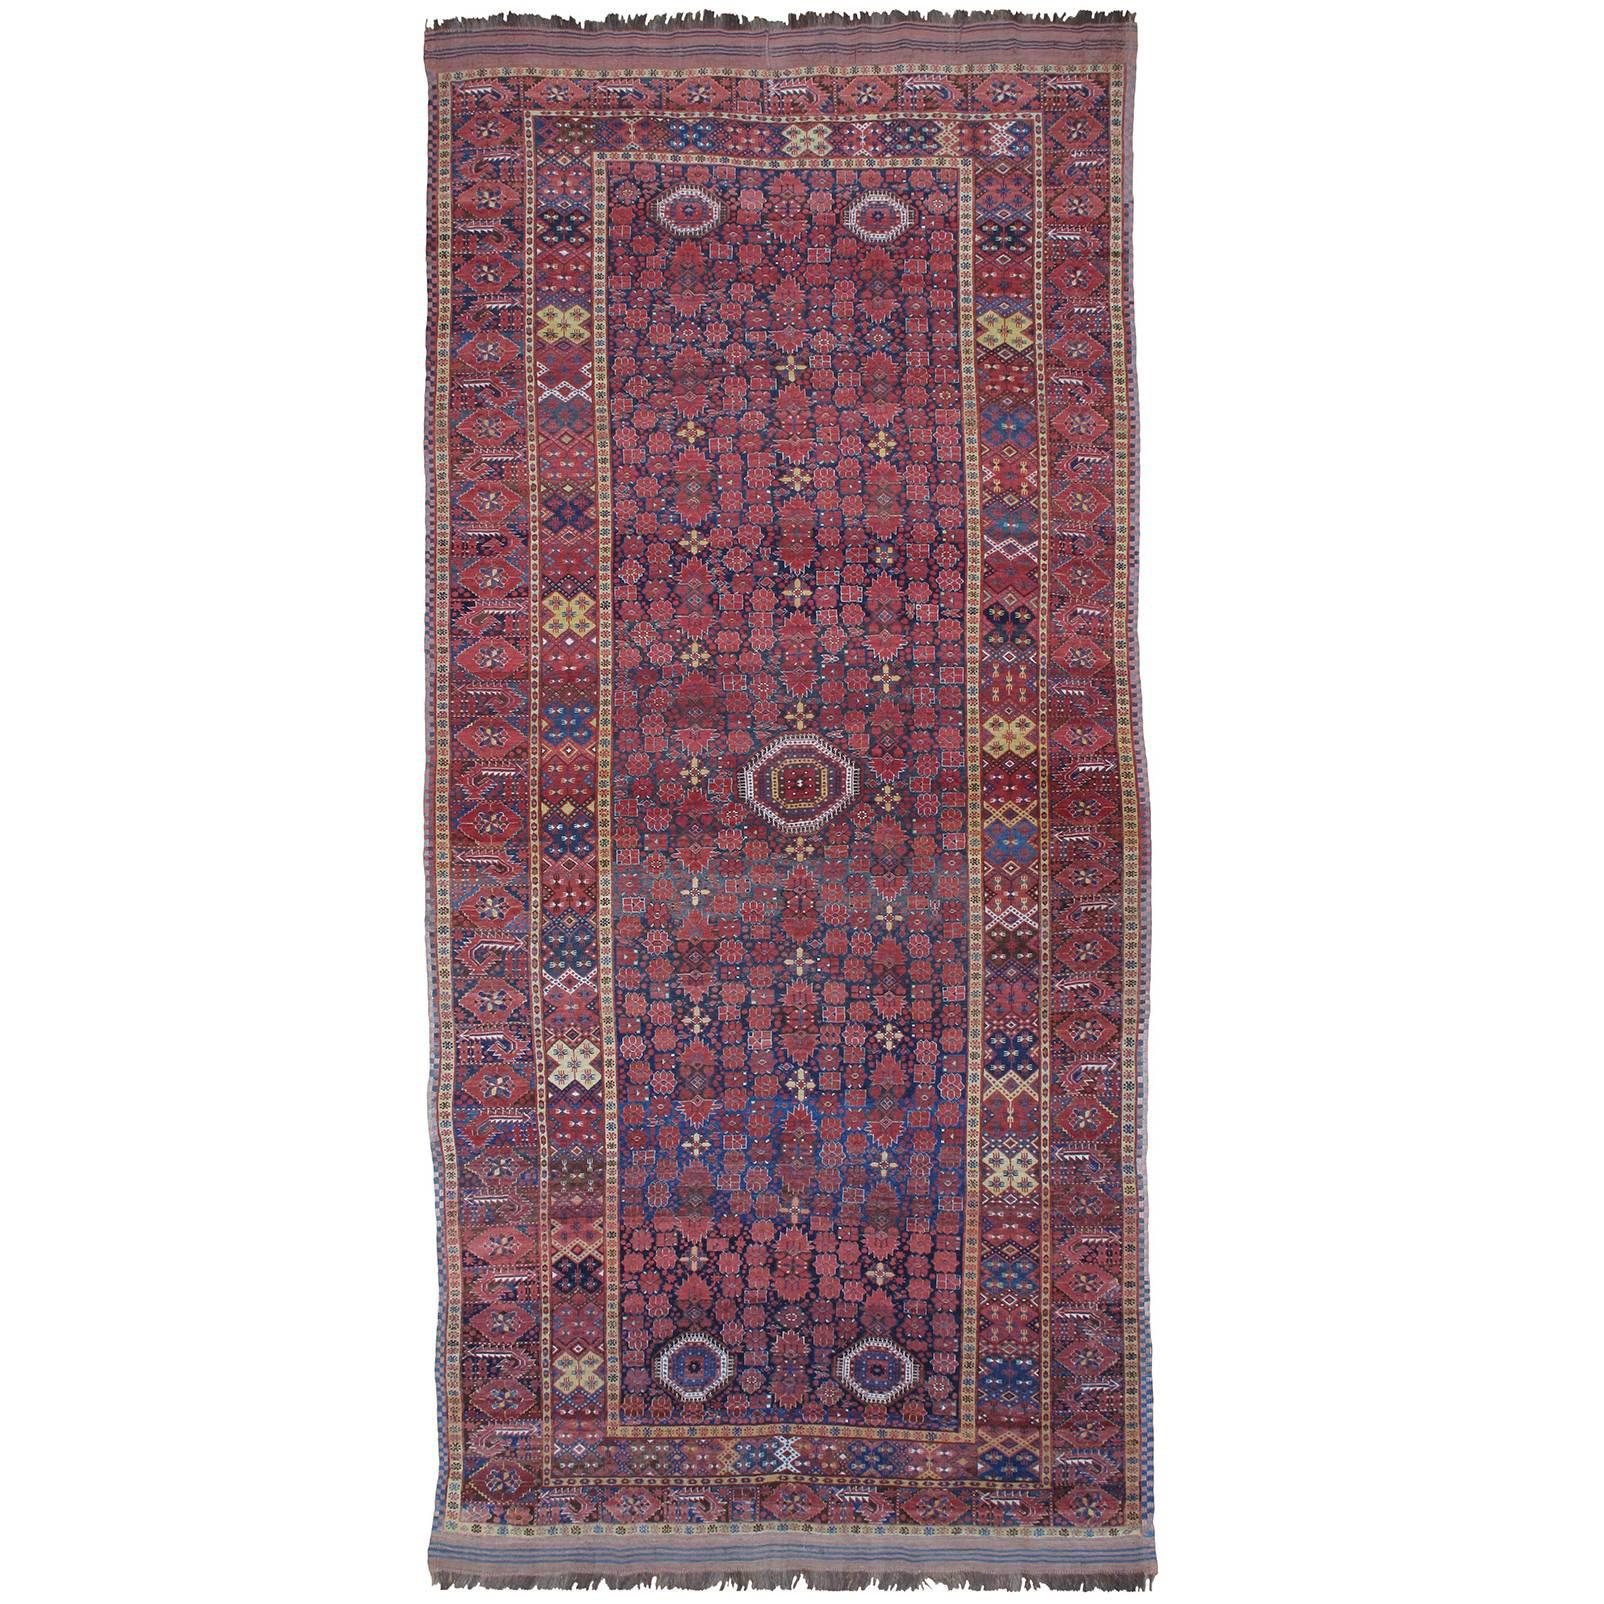 Fantastic Antique Beshir Carpet